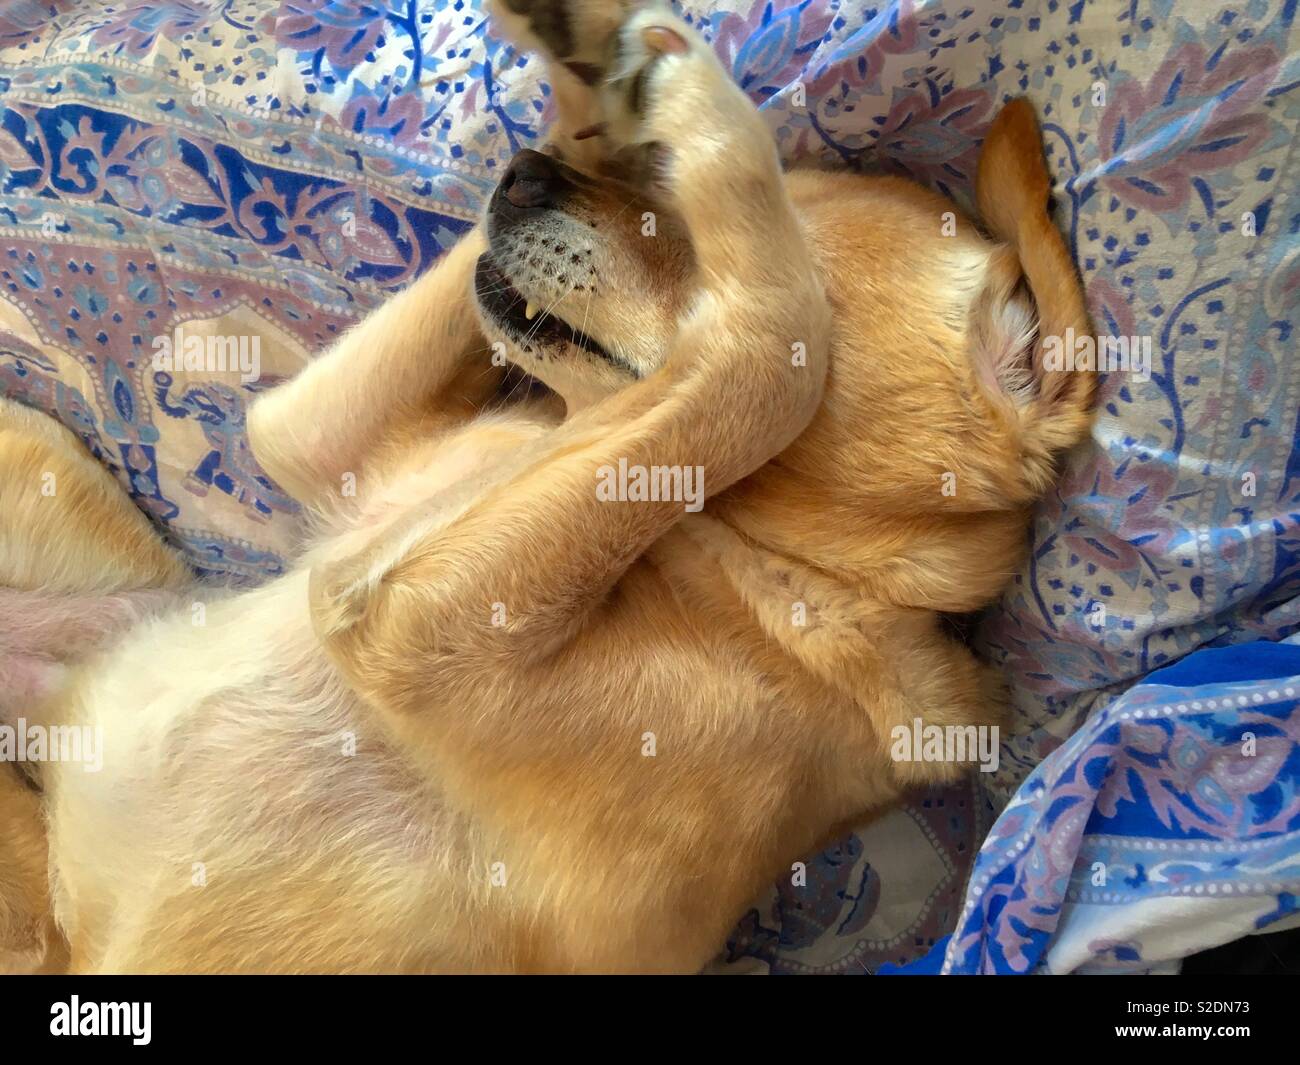 Labrador retriever playing peekaboo Stock Photo